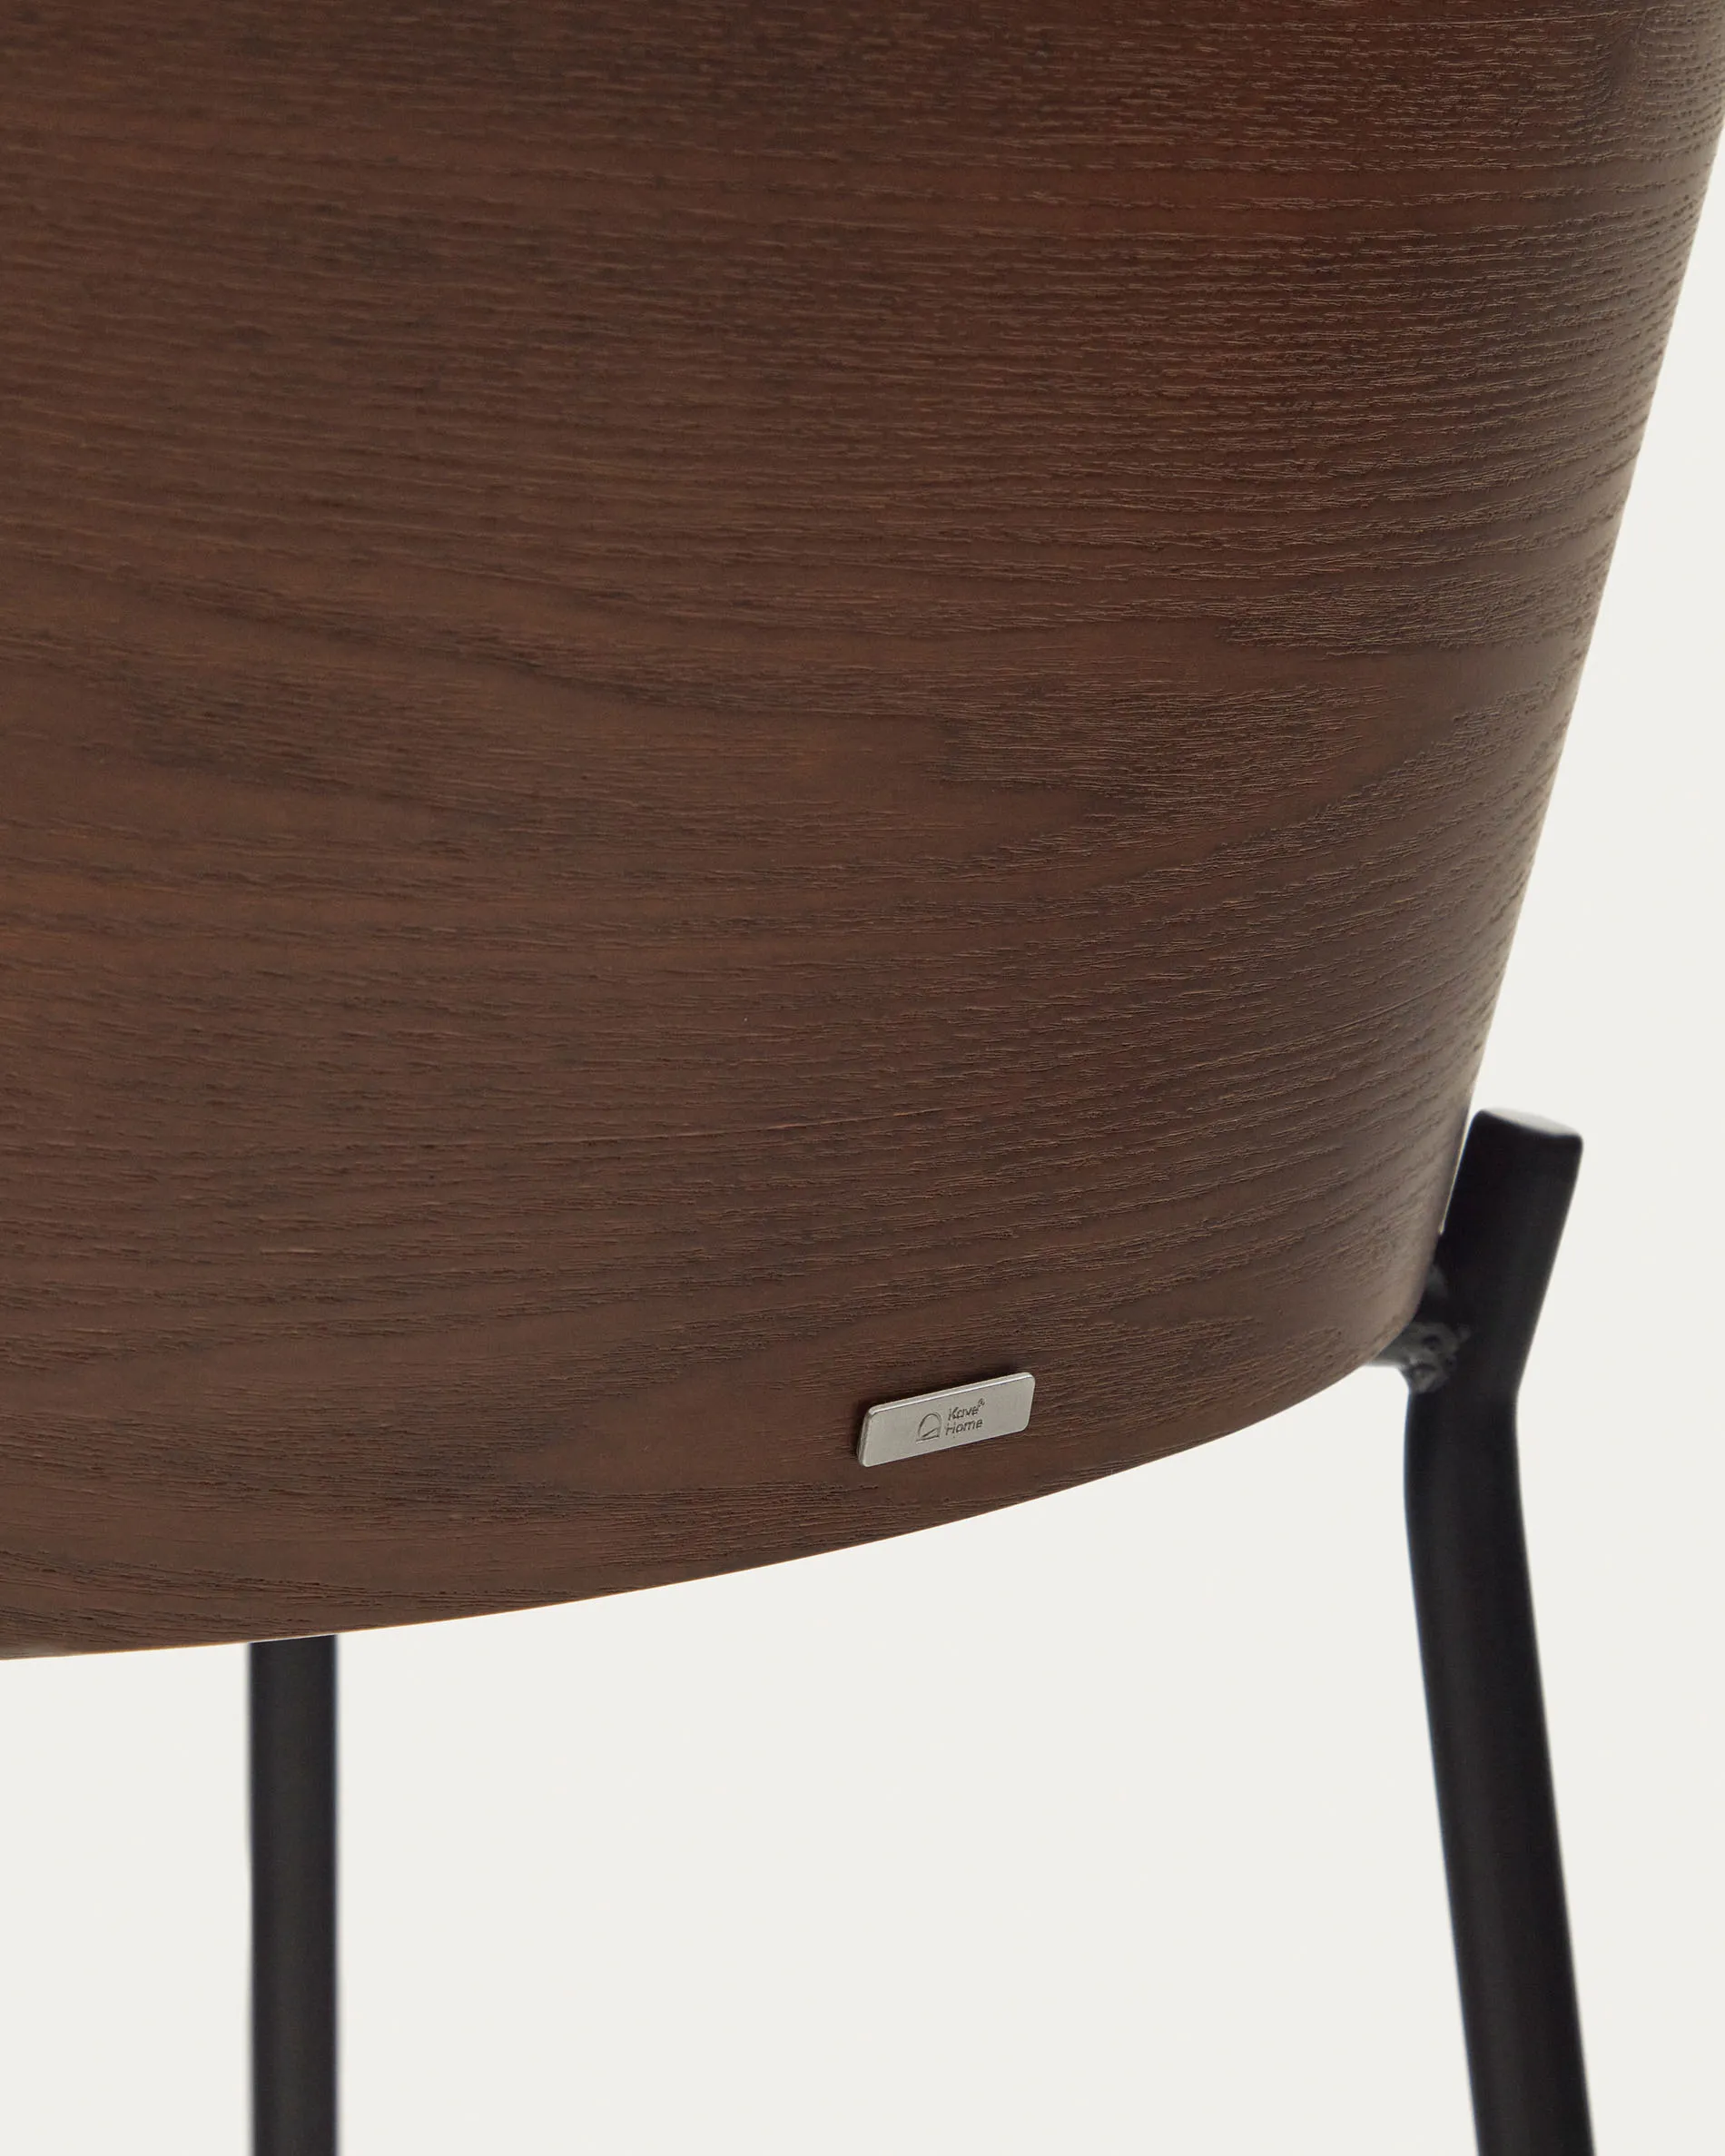 Барный стул La Forma Eamy светло-коричневый с отделкой из шпона ясеня 178072